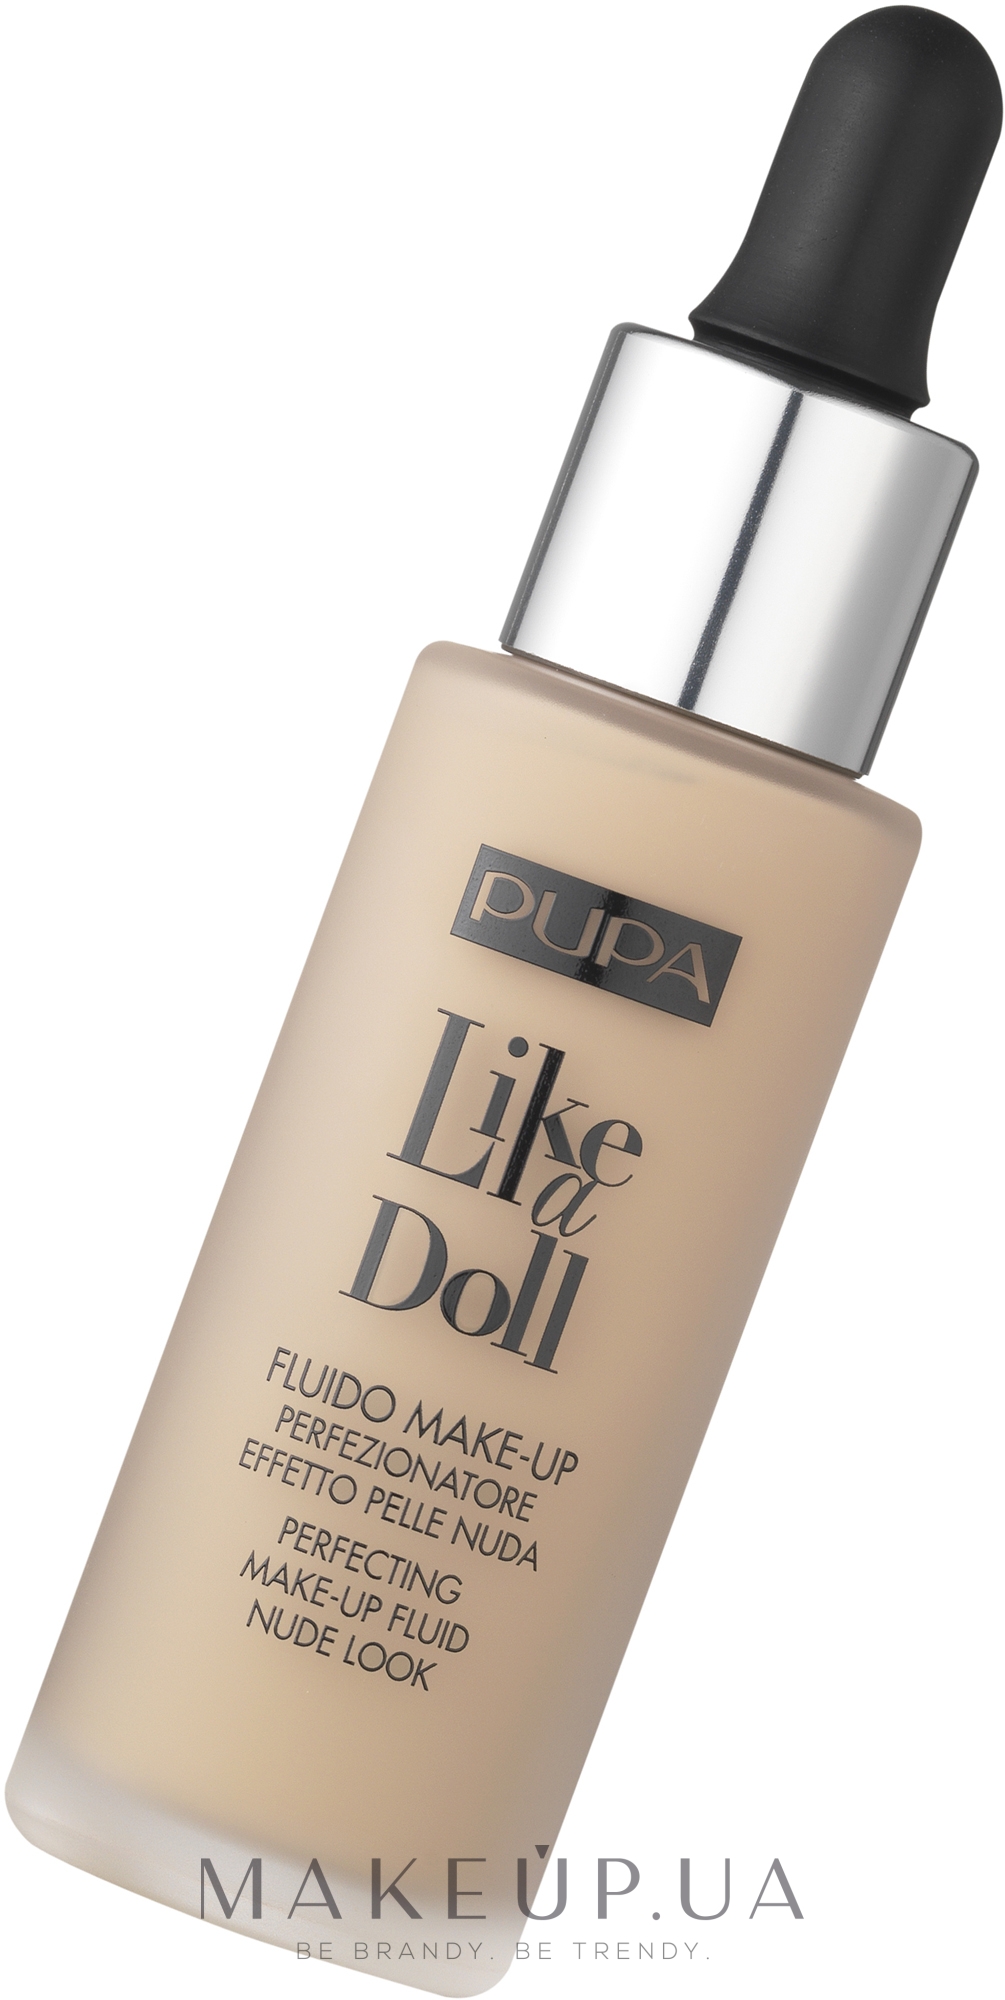 Жидкая тональная основа - Pupa Like a Doll Perfecting Make-up Fluid Nude Look — фото 010 - Для очень светлой кожи